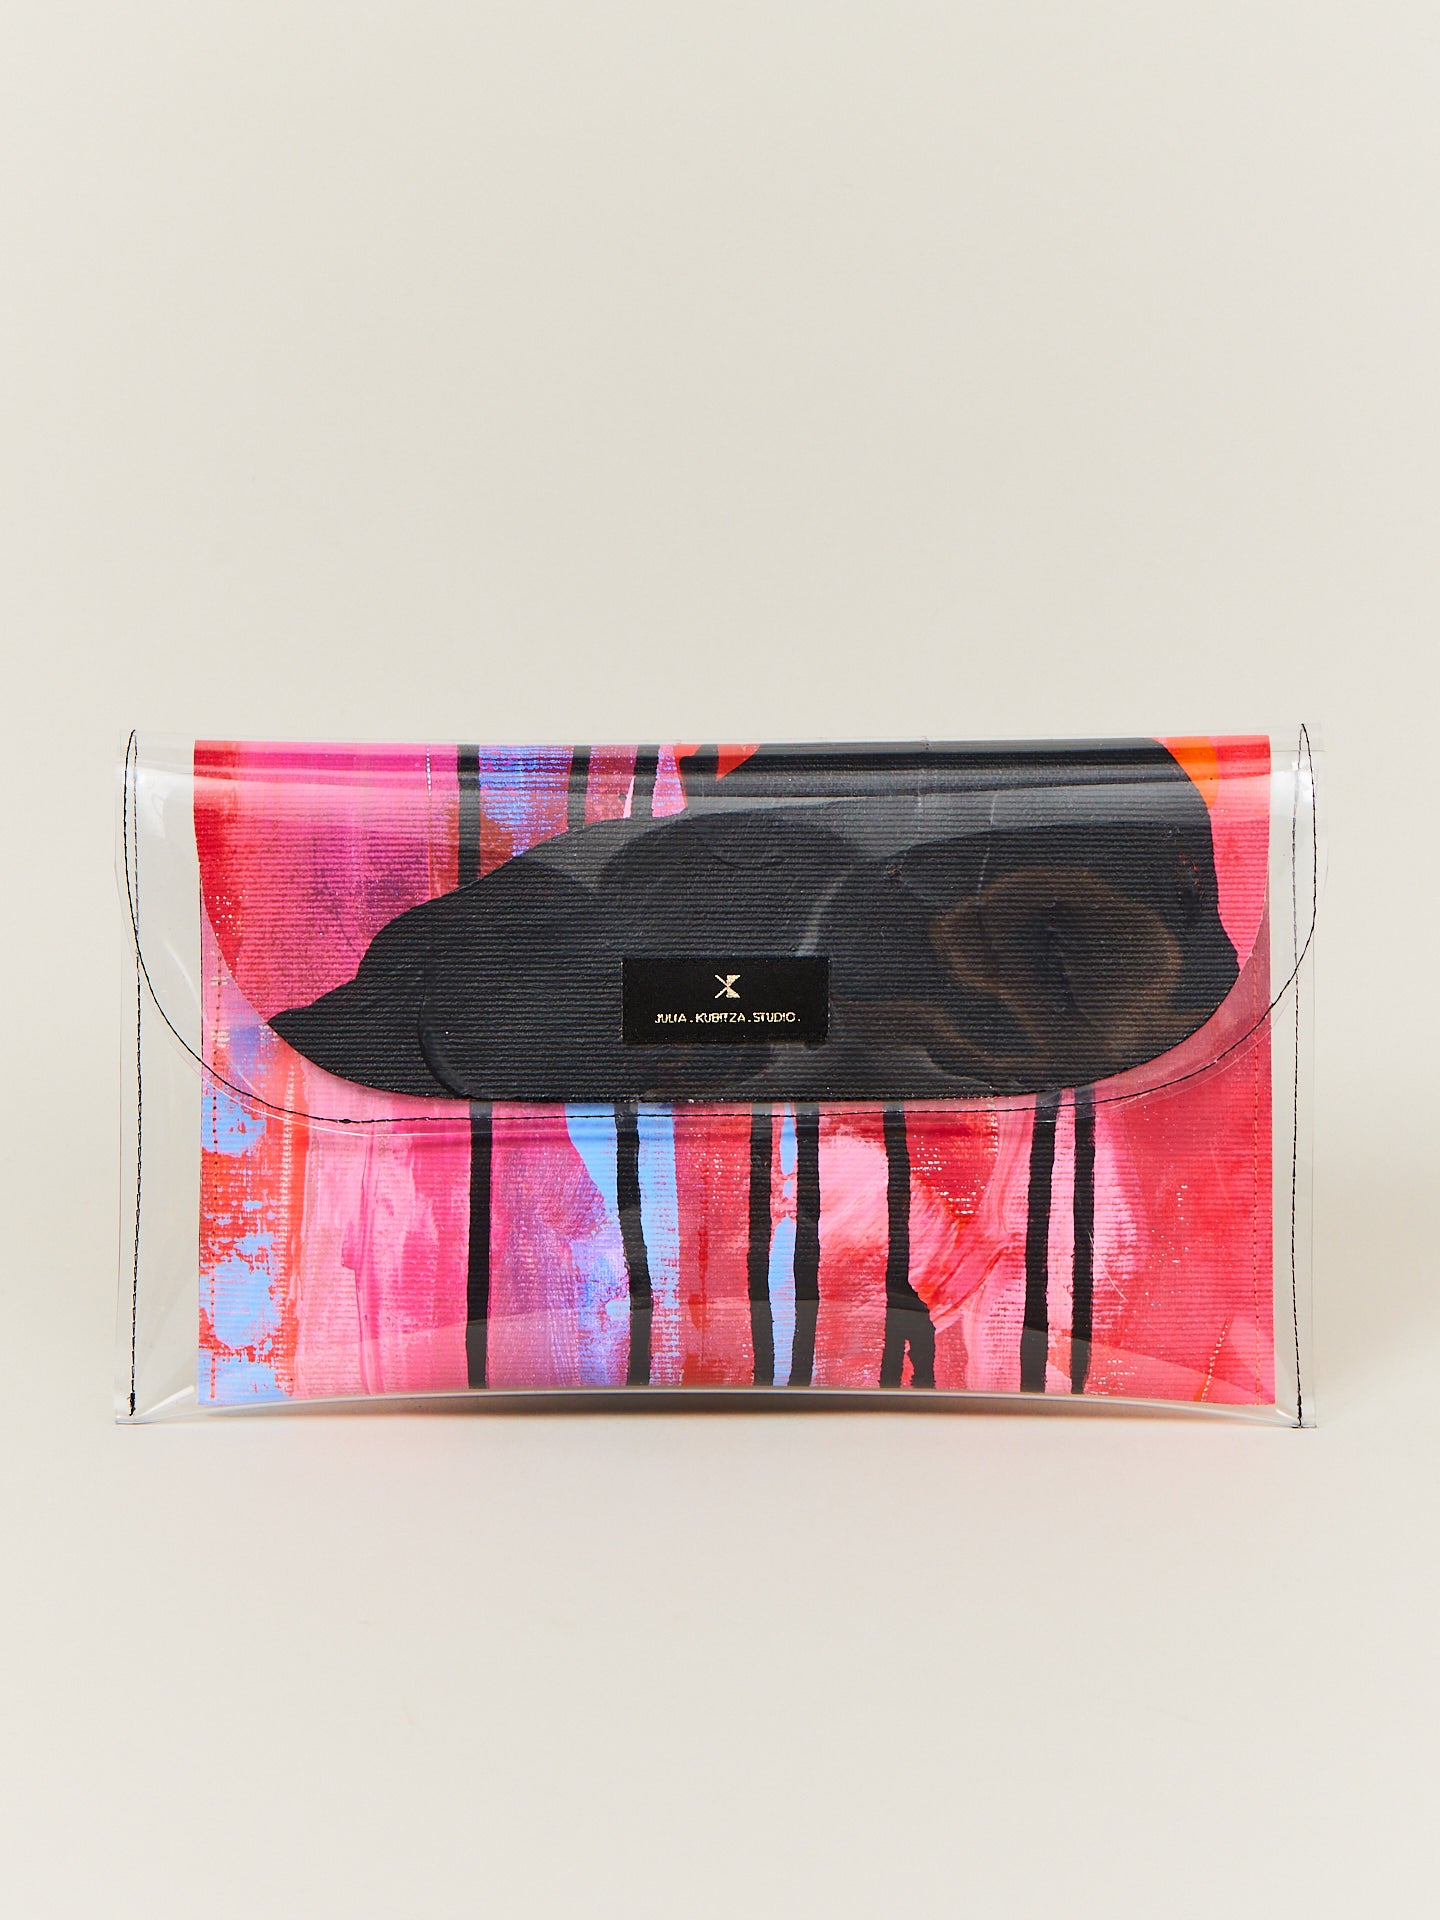 Eine bunte Tasche mit hohem Designanspruch, der durch die Leinwand und ihre Kunst unterstrichen wird.